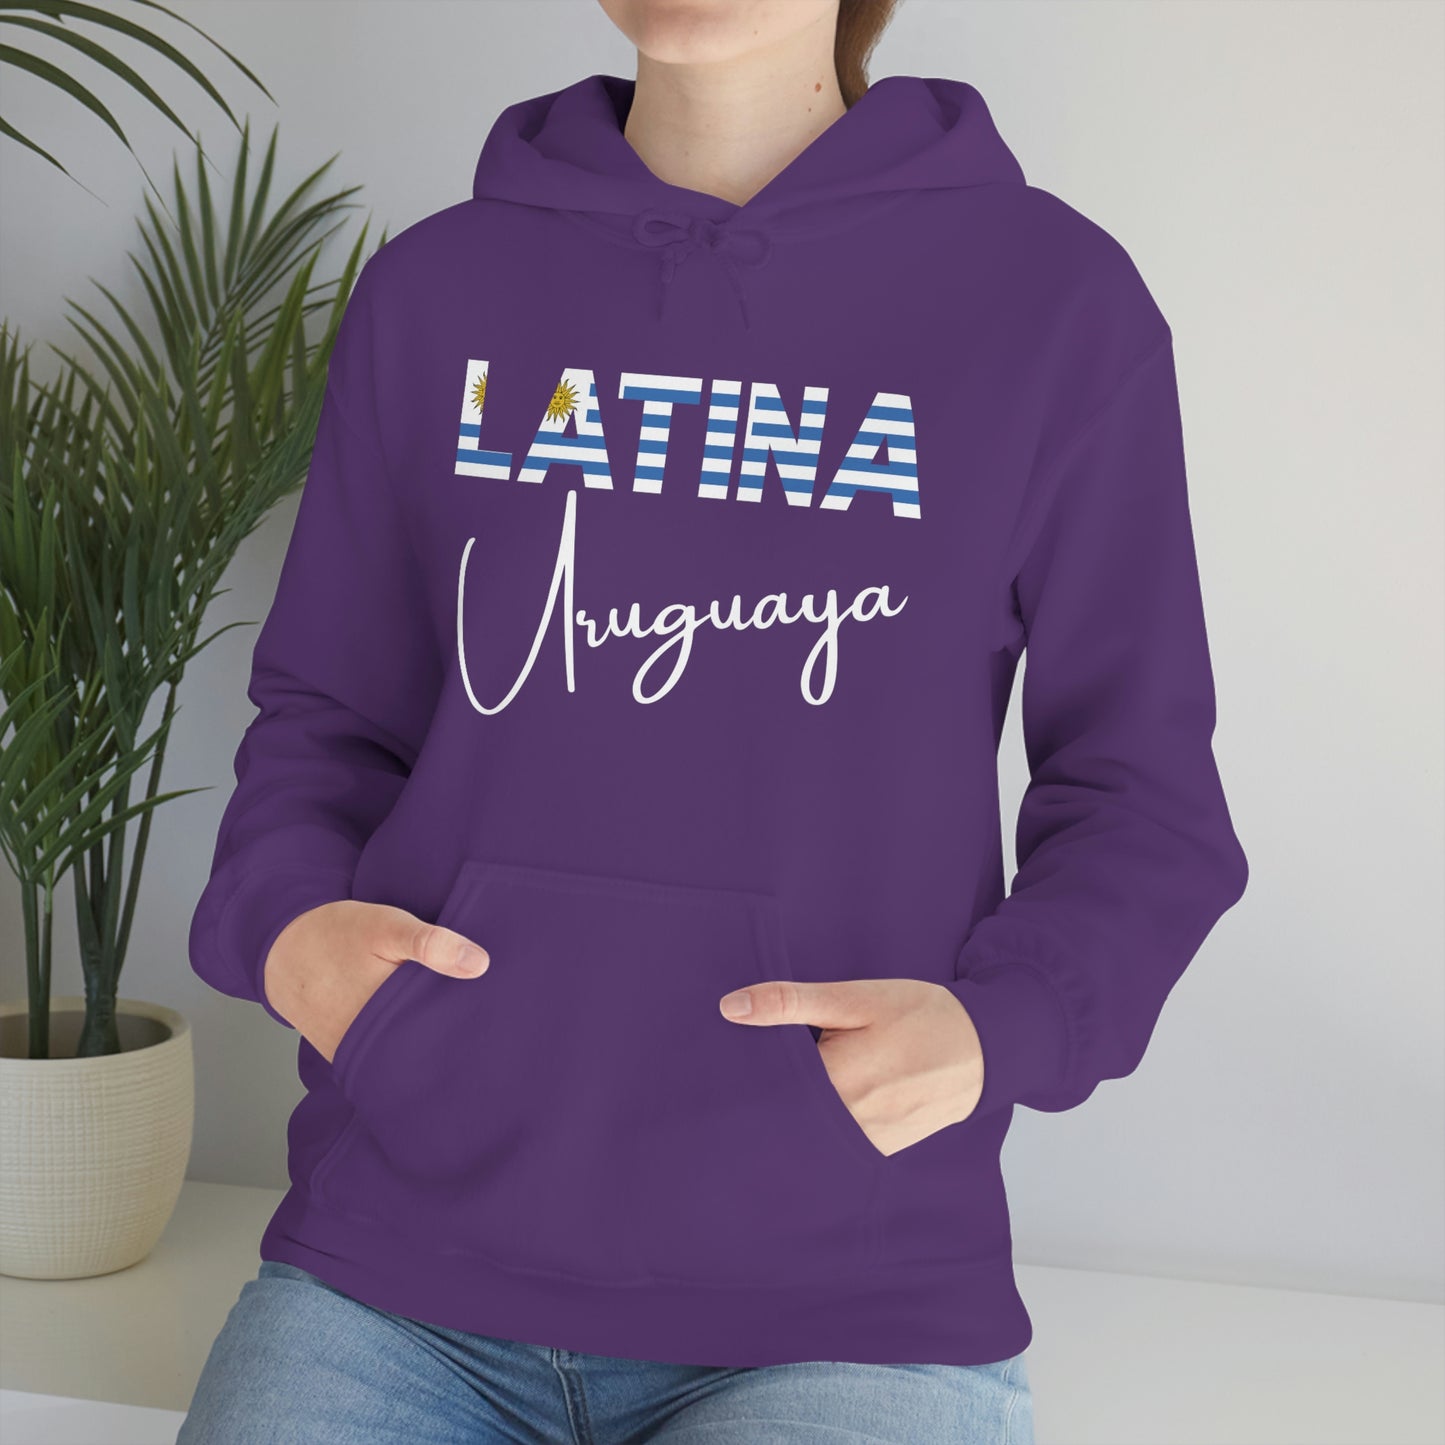 Latina Uruguaya, Hoodie